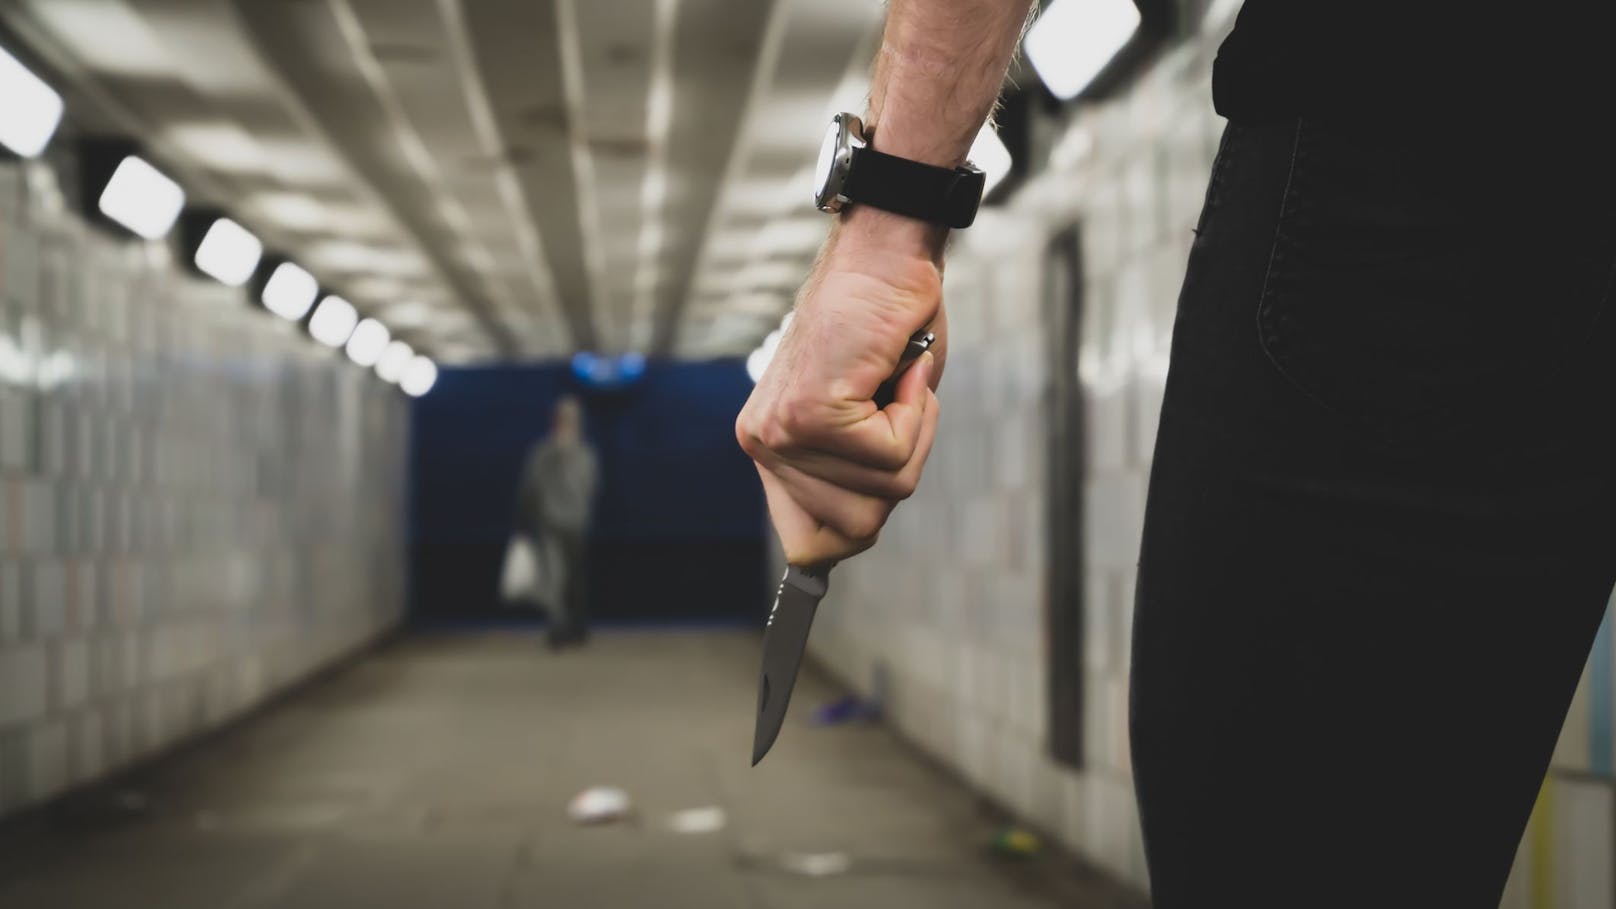 Messer-Attacke in Favoriten – 23-Jähriger sticht zu